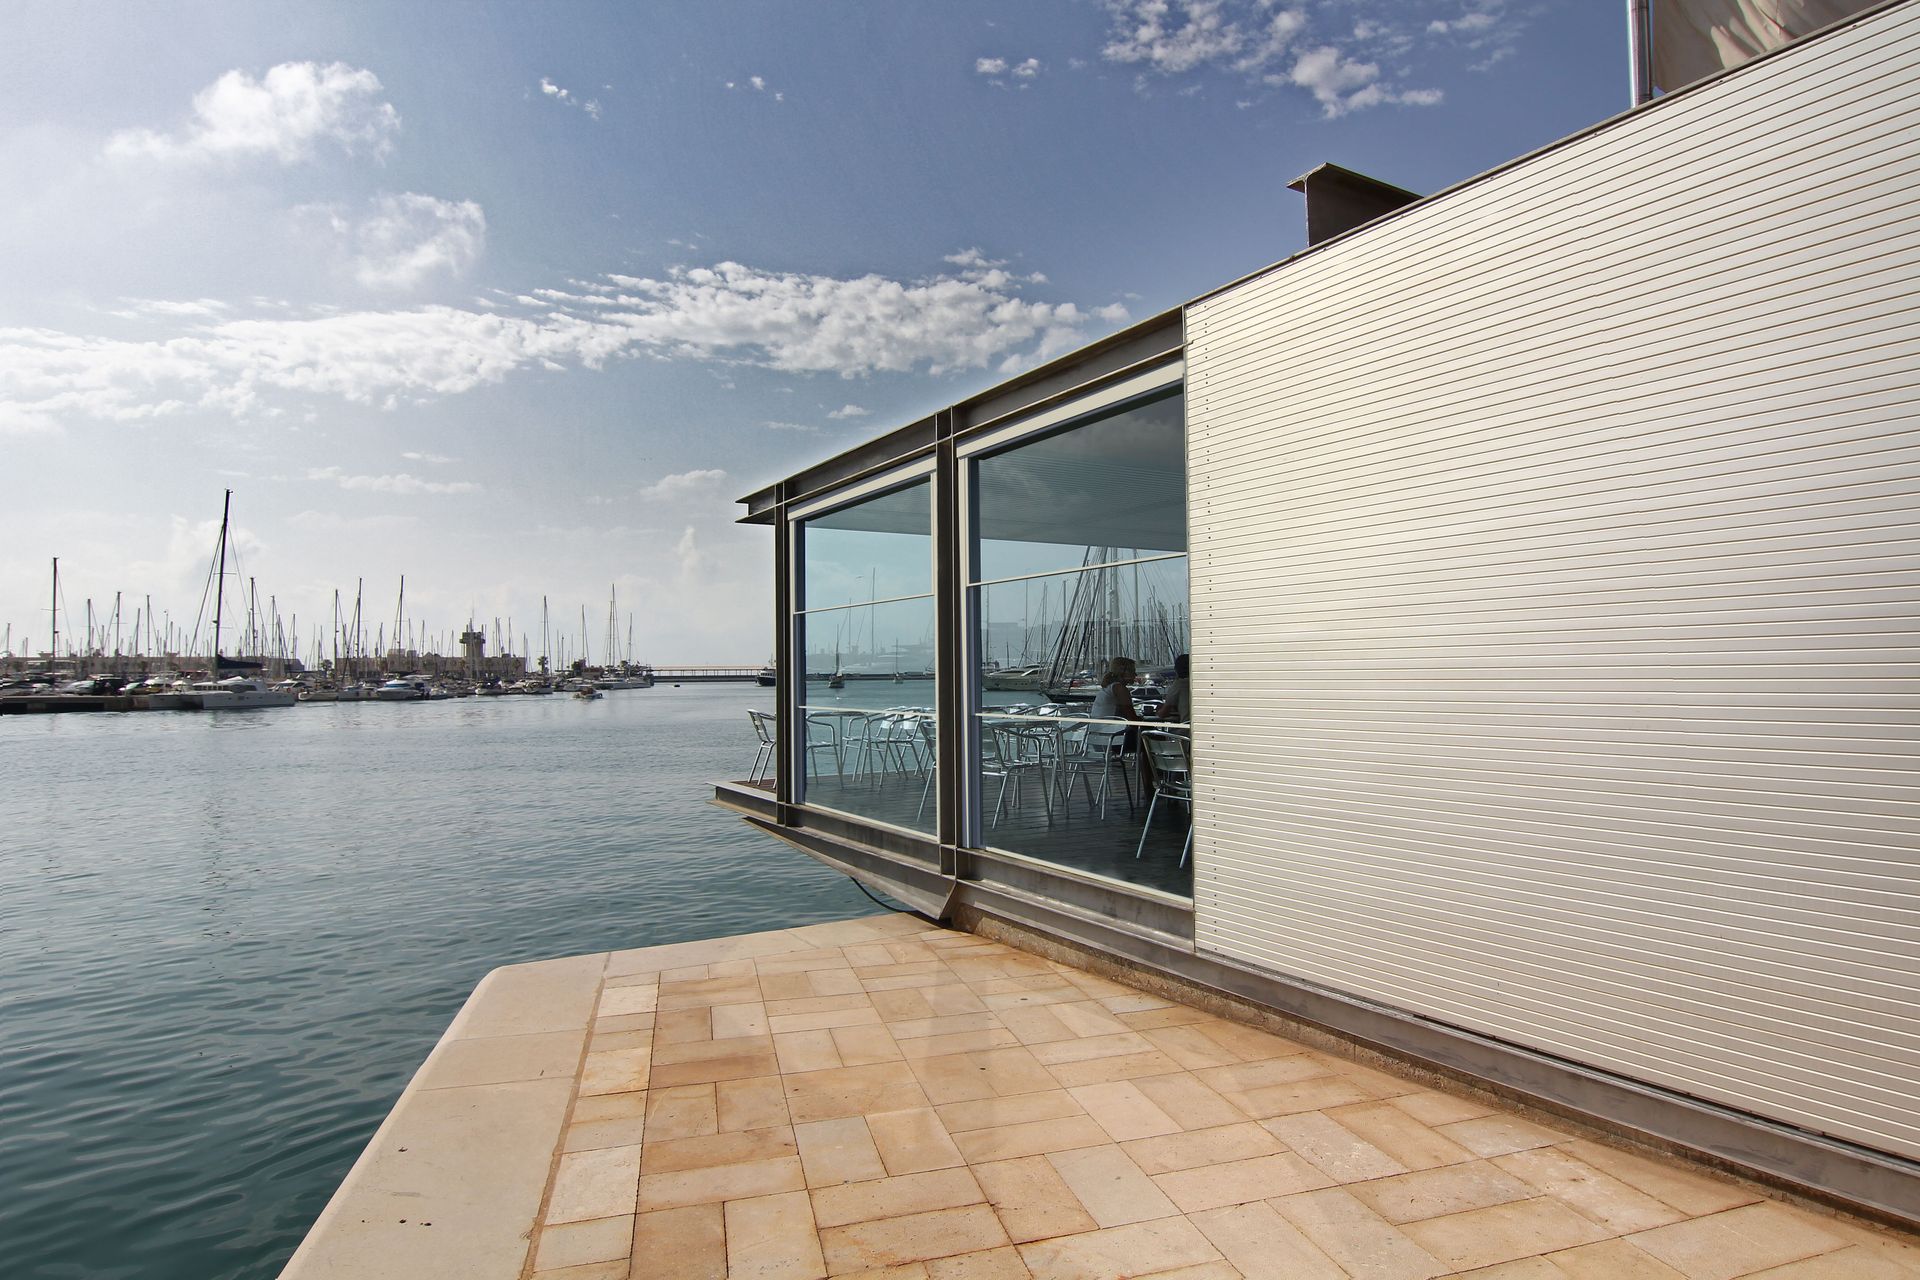 Fenêtres intégrales sur terrasse en bord de mer